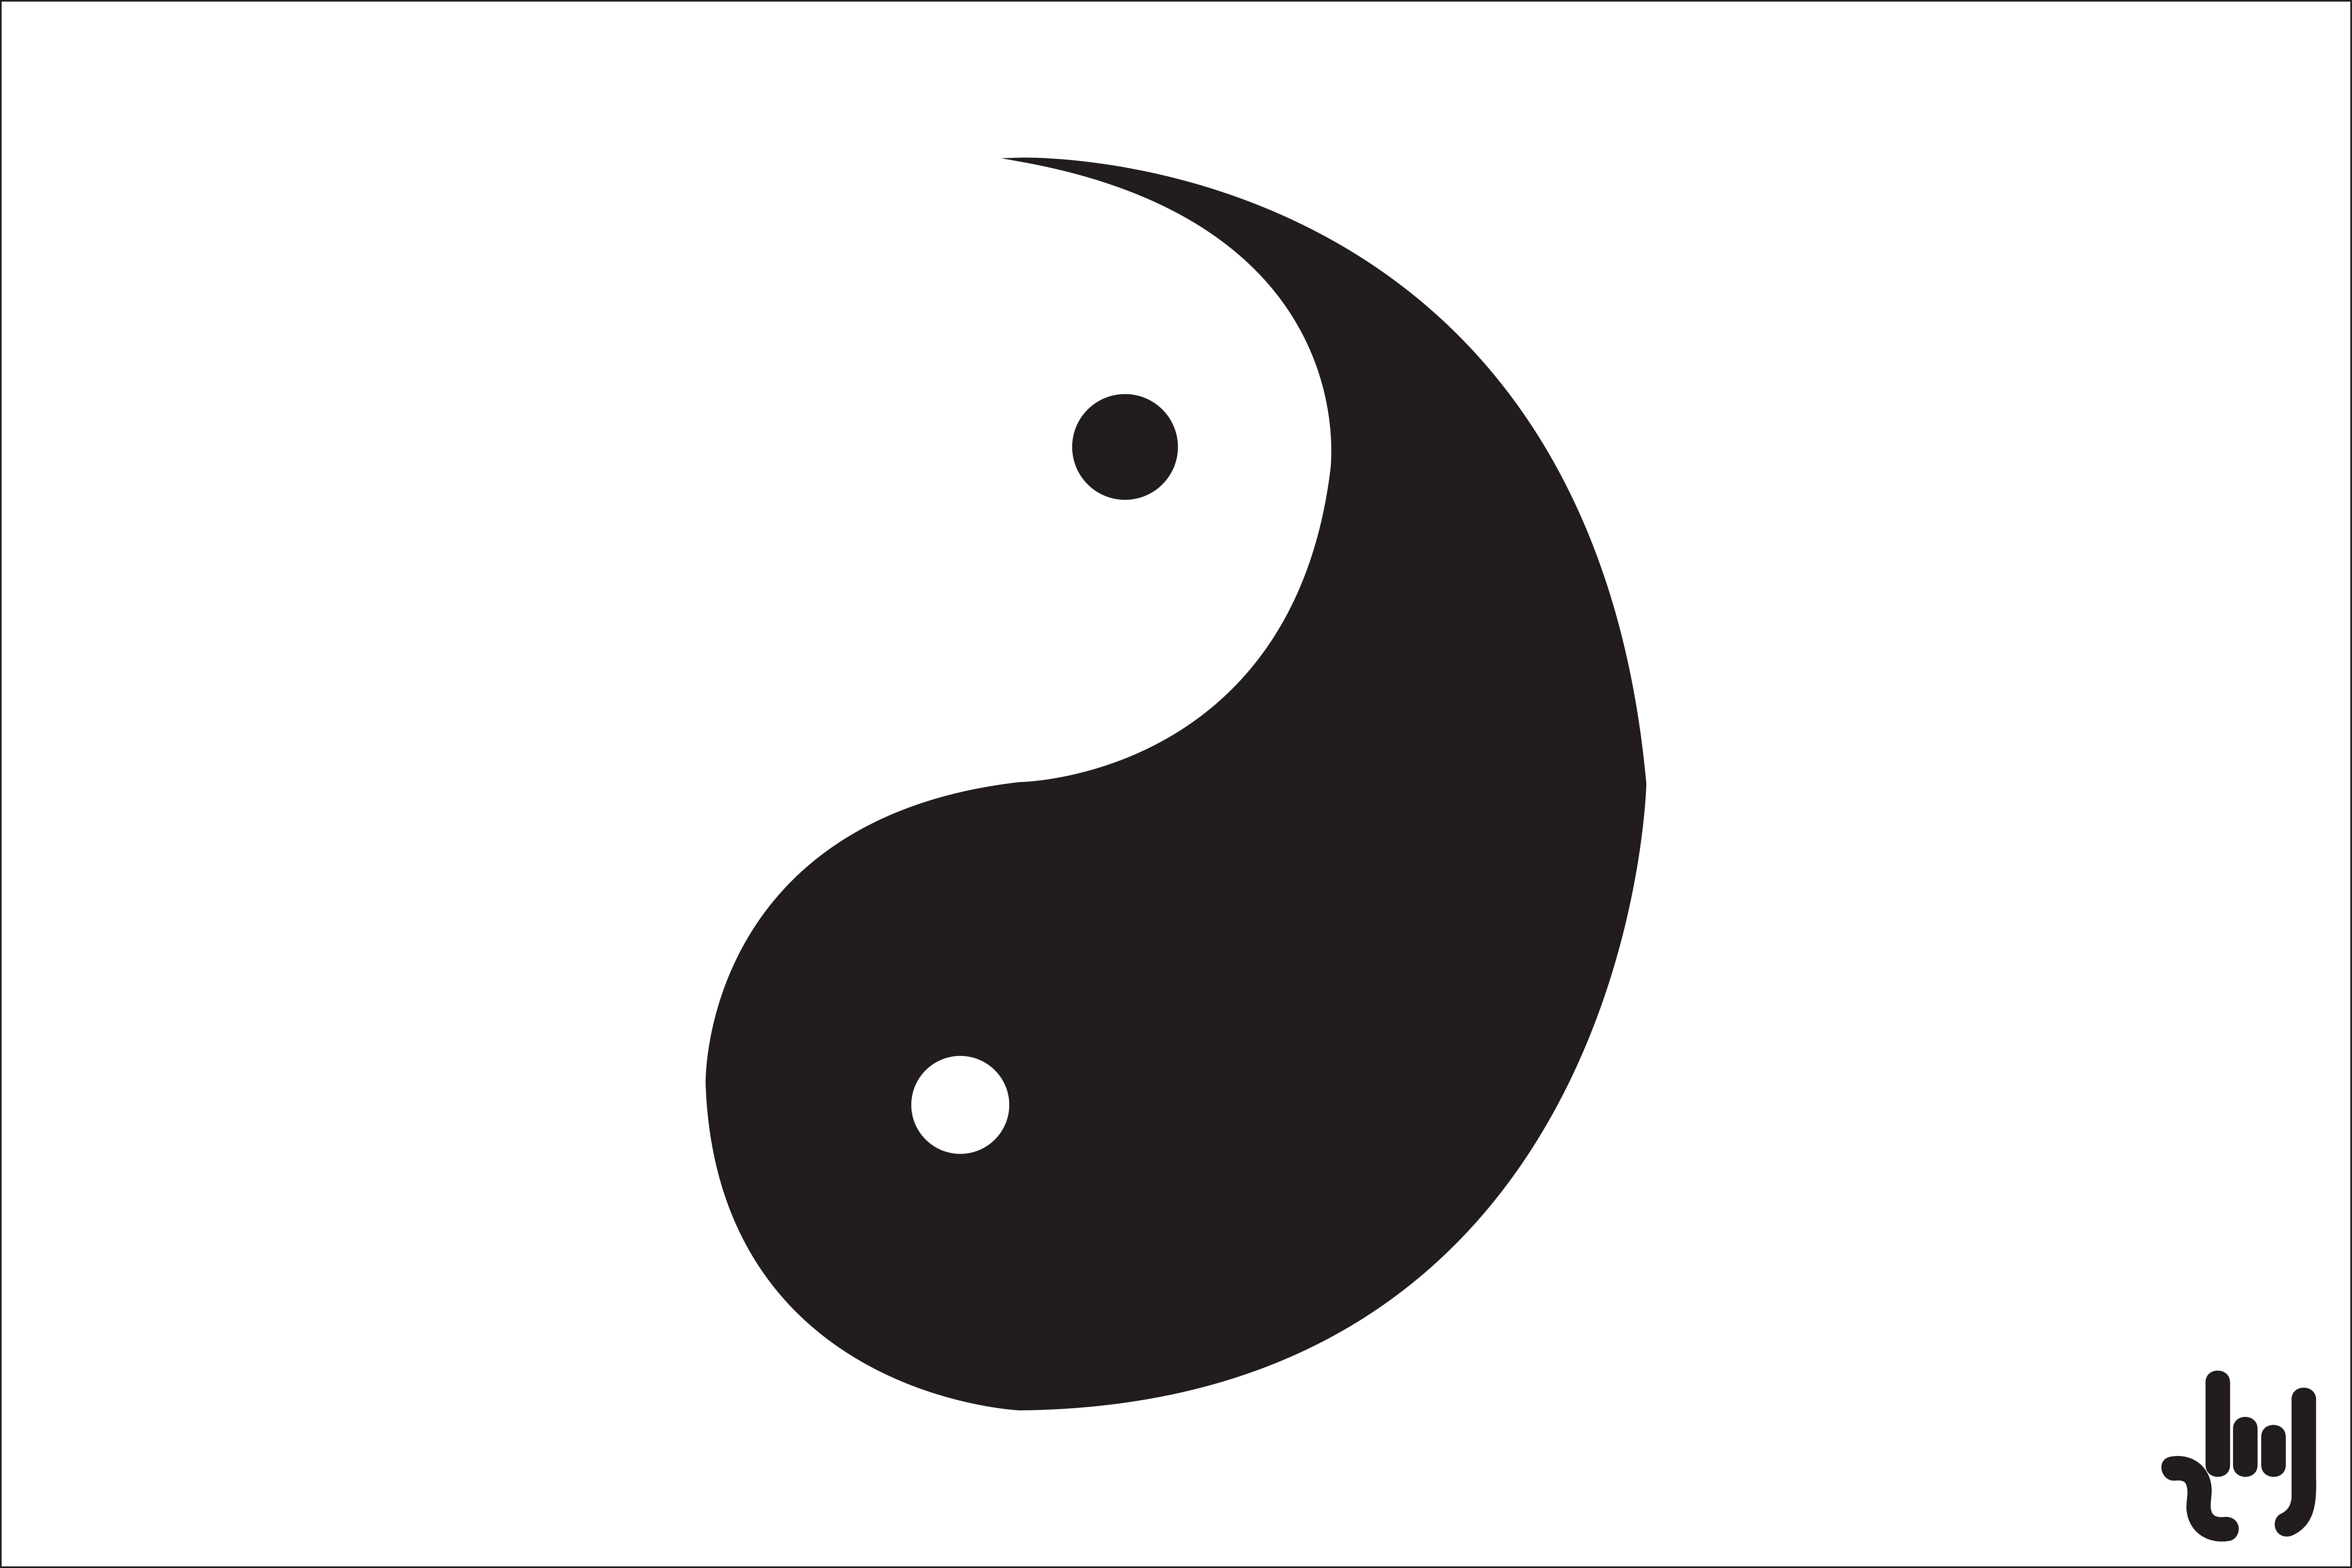 Free stock photo of Yang, Yin, yin and yang